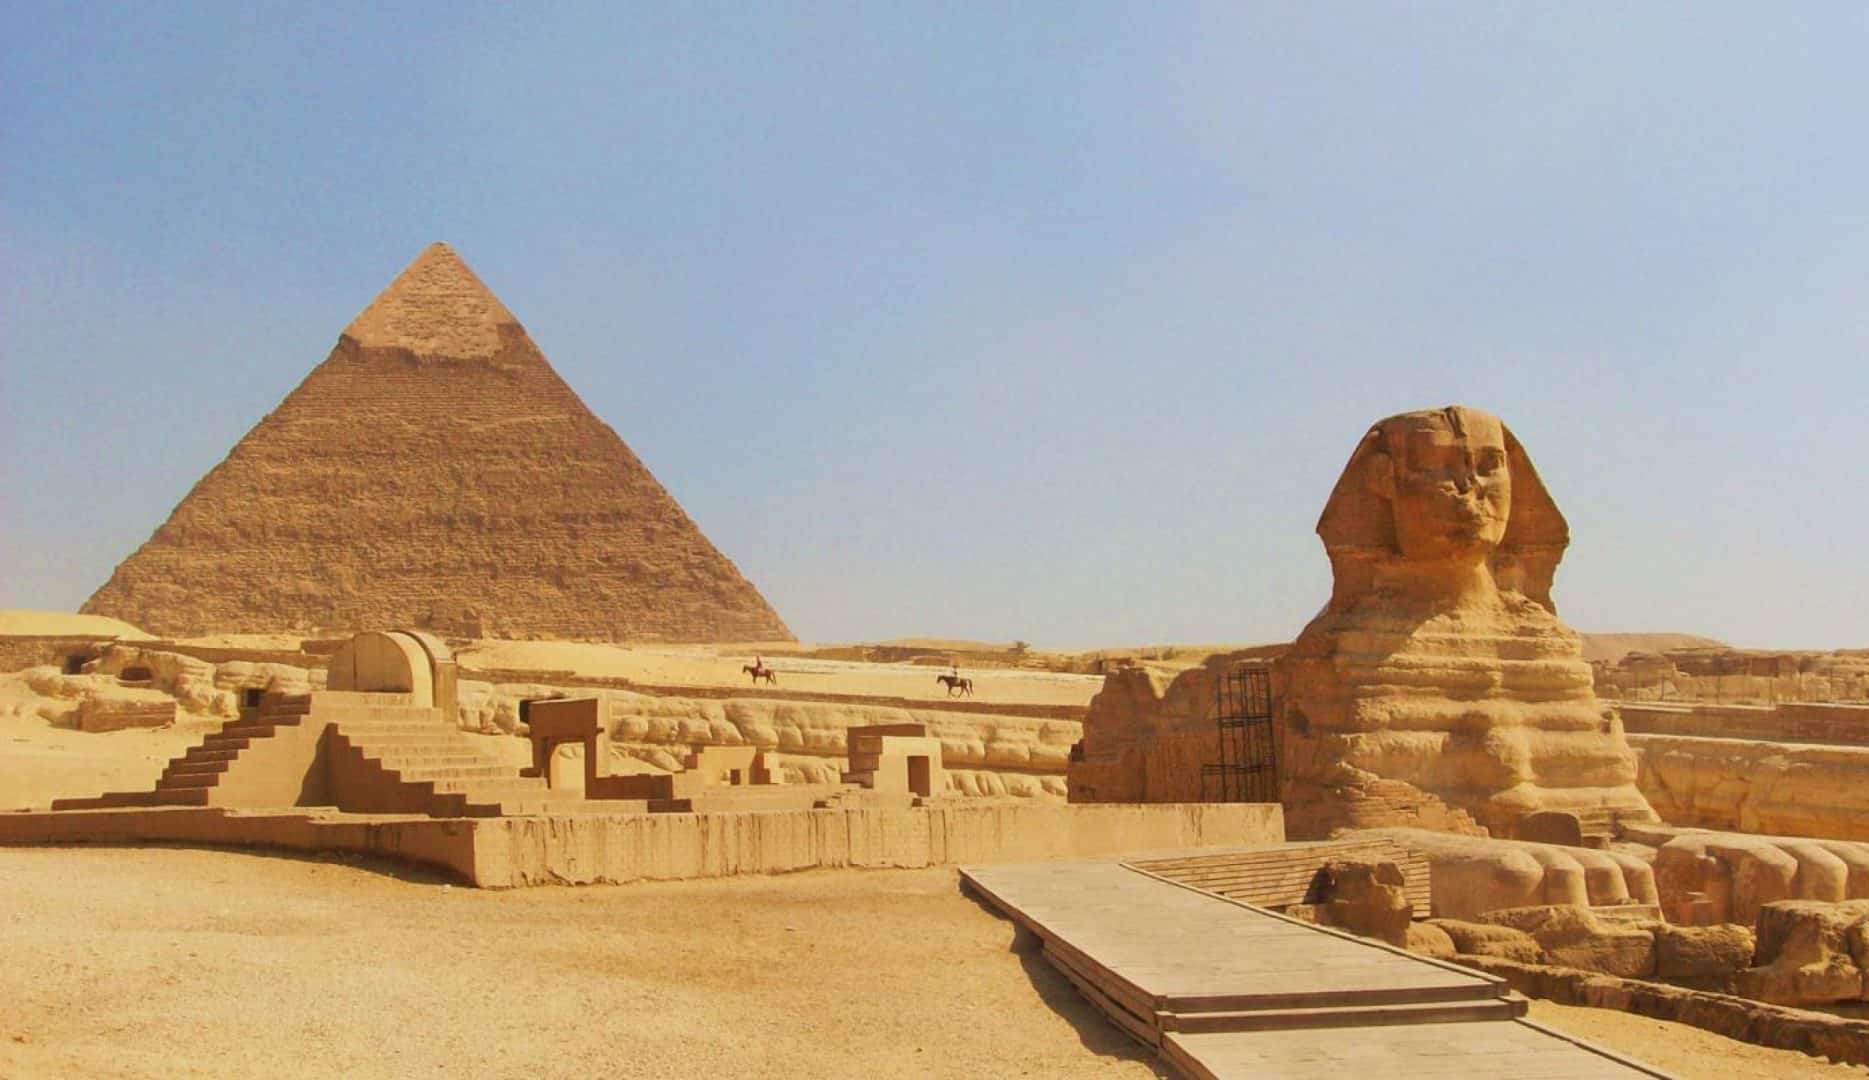 De pirâmides a palácio com jardins, atrações turísticas no Egito podem surpreender 